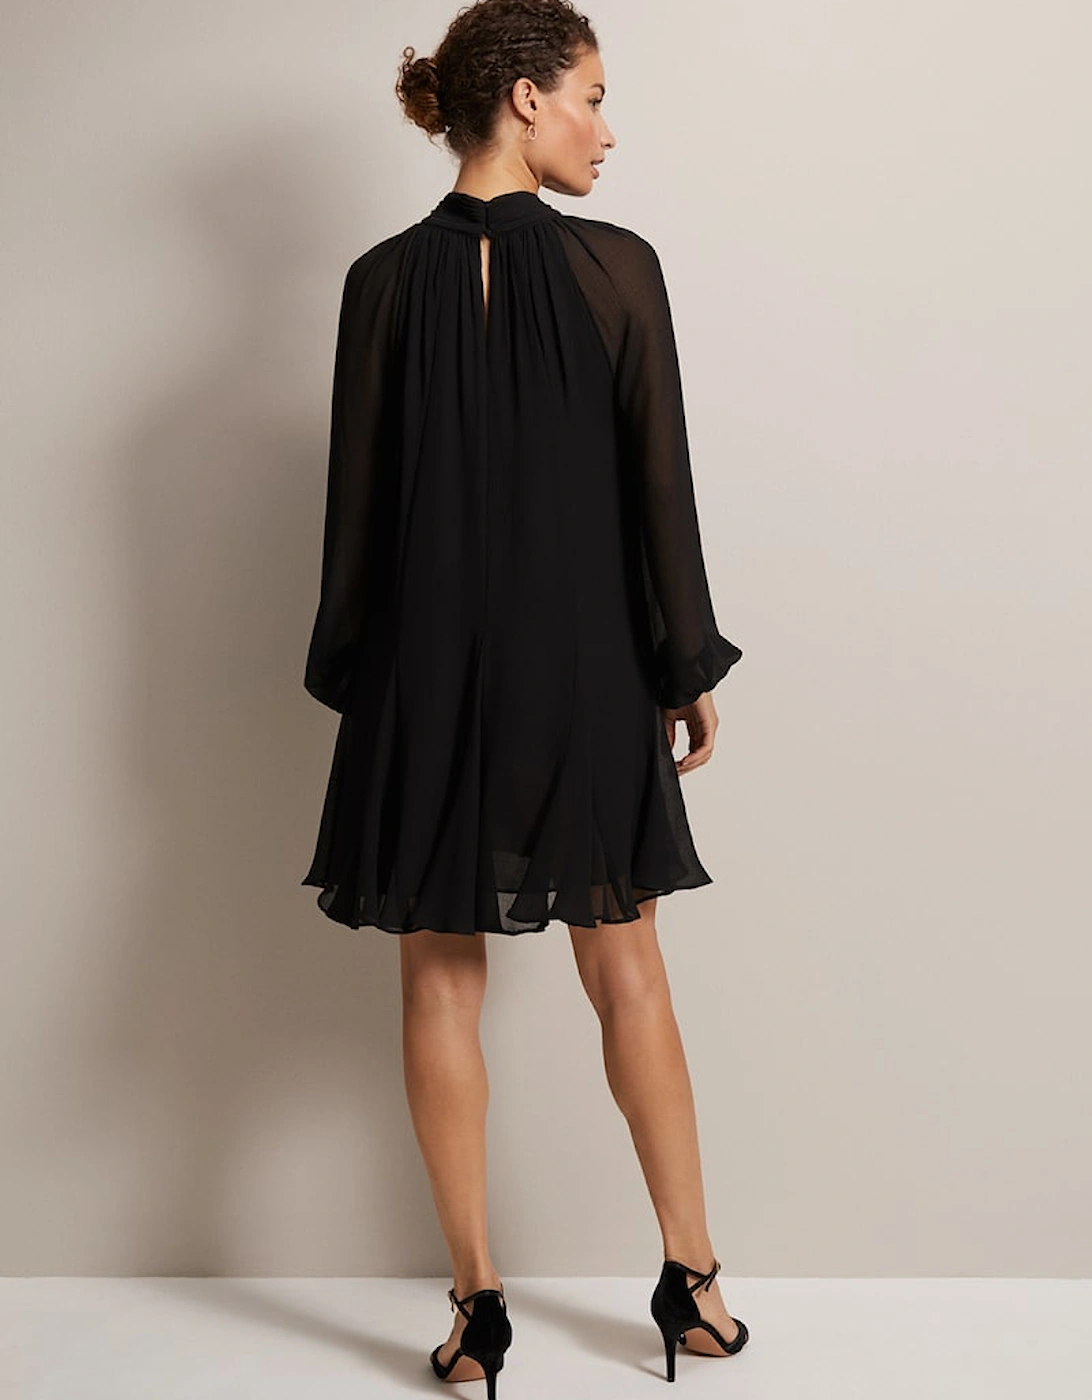 Romanna Black Swing Mini Dress